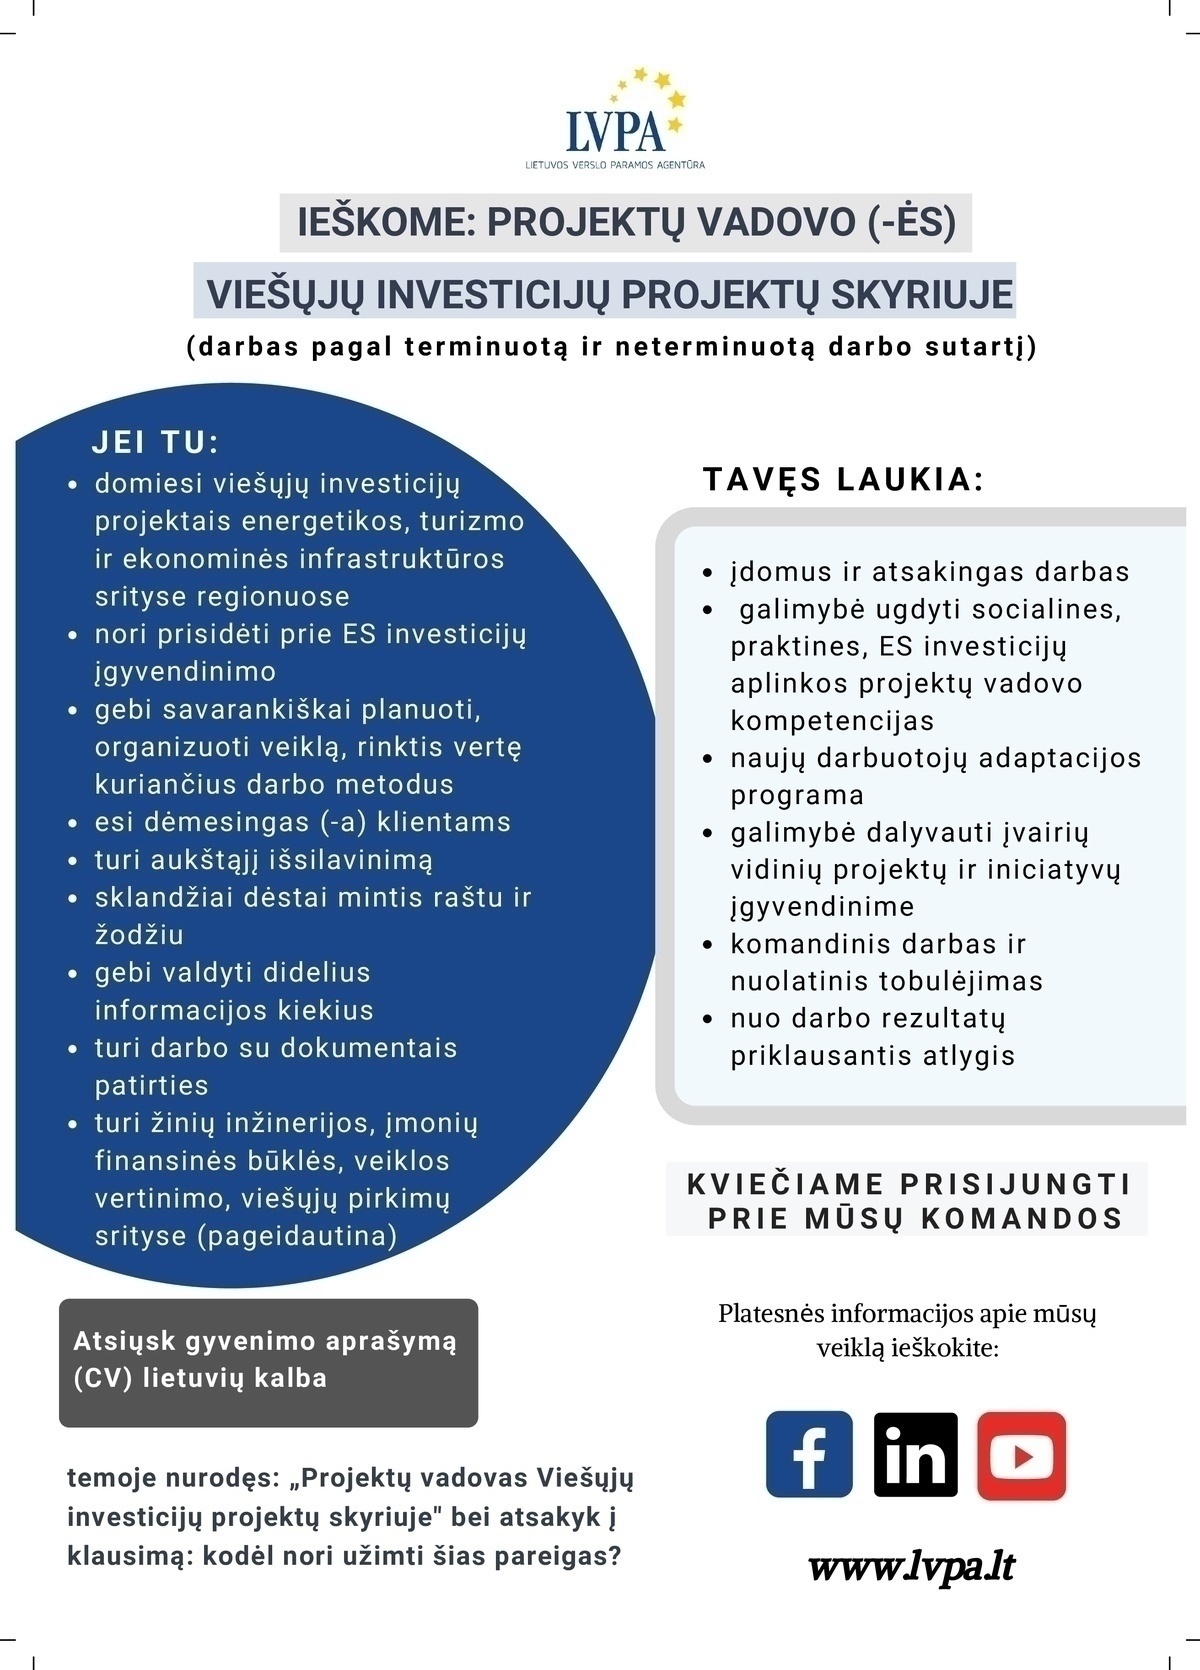 Lietuvos verslo paramos agentūra, VšĮ Projektų vadovas Viešųjų investicijų projektų skyriuje